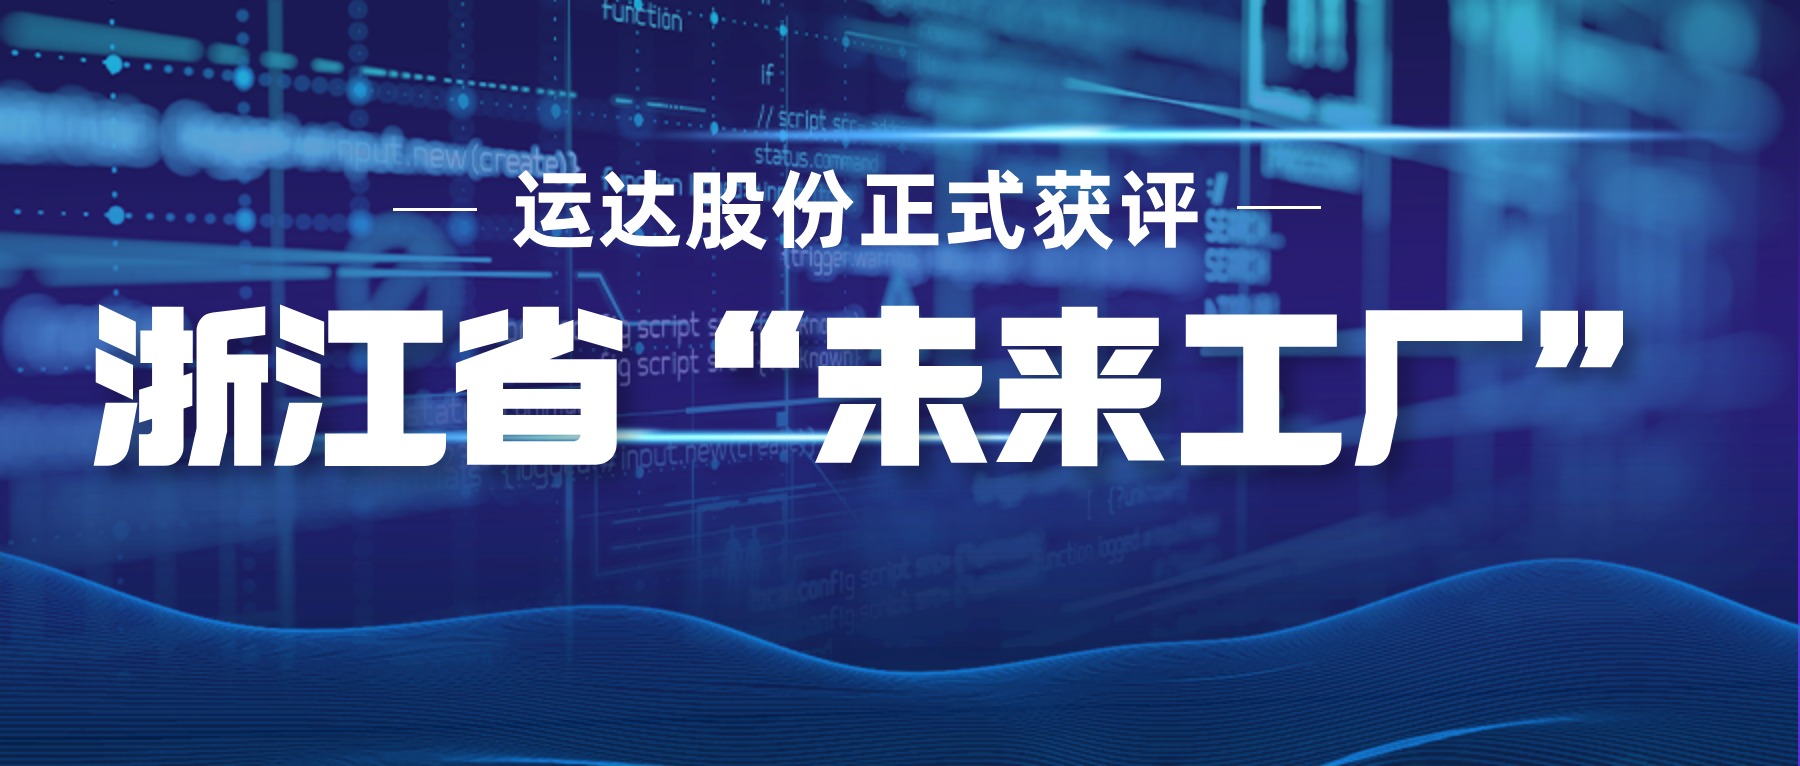 澳门尼威斯人网站8311正式获评浙江省“未来工厂”